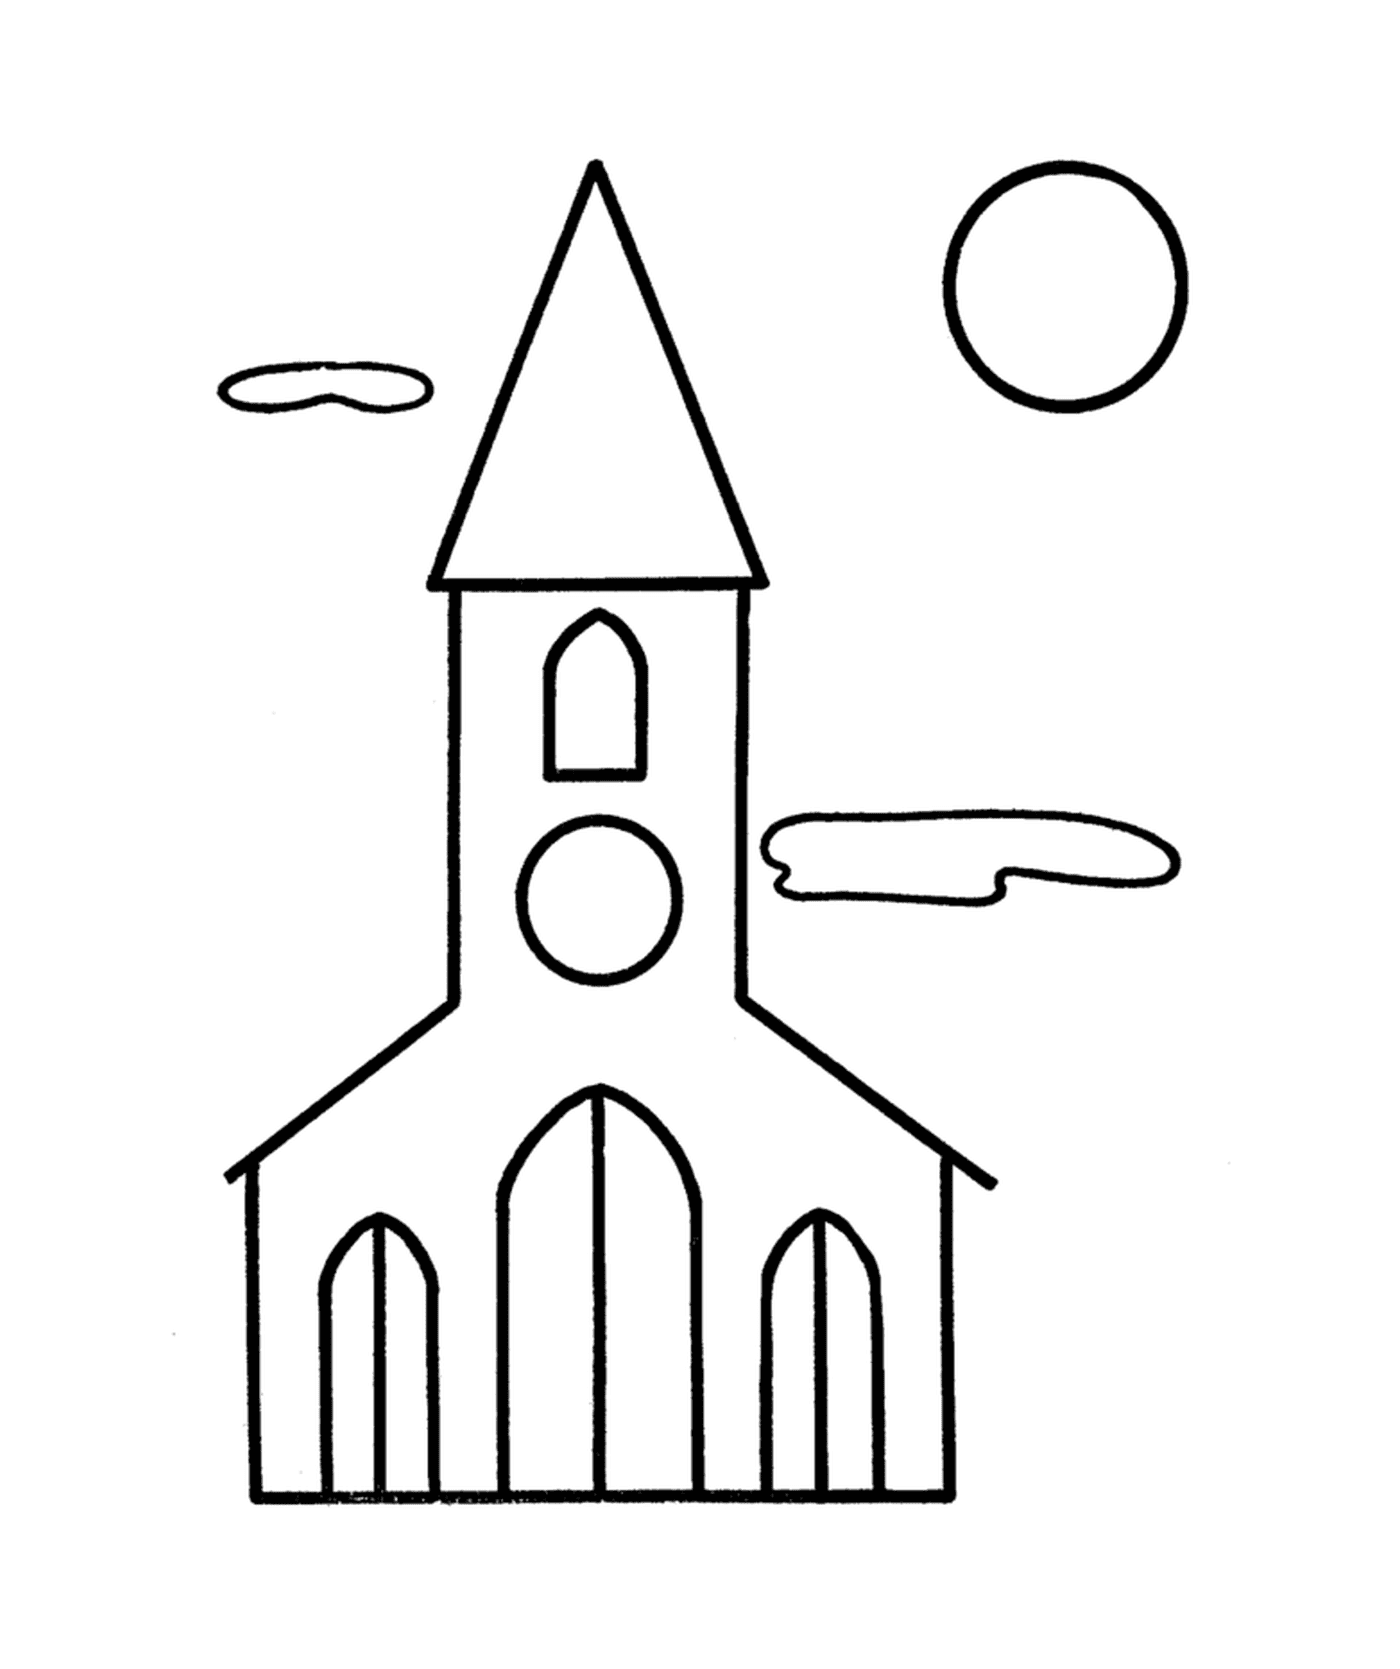  A church 